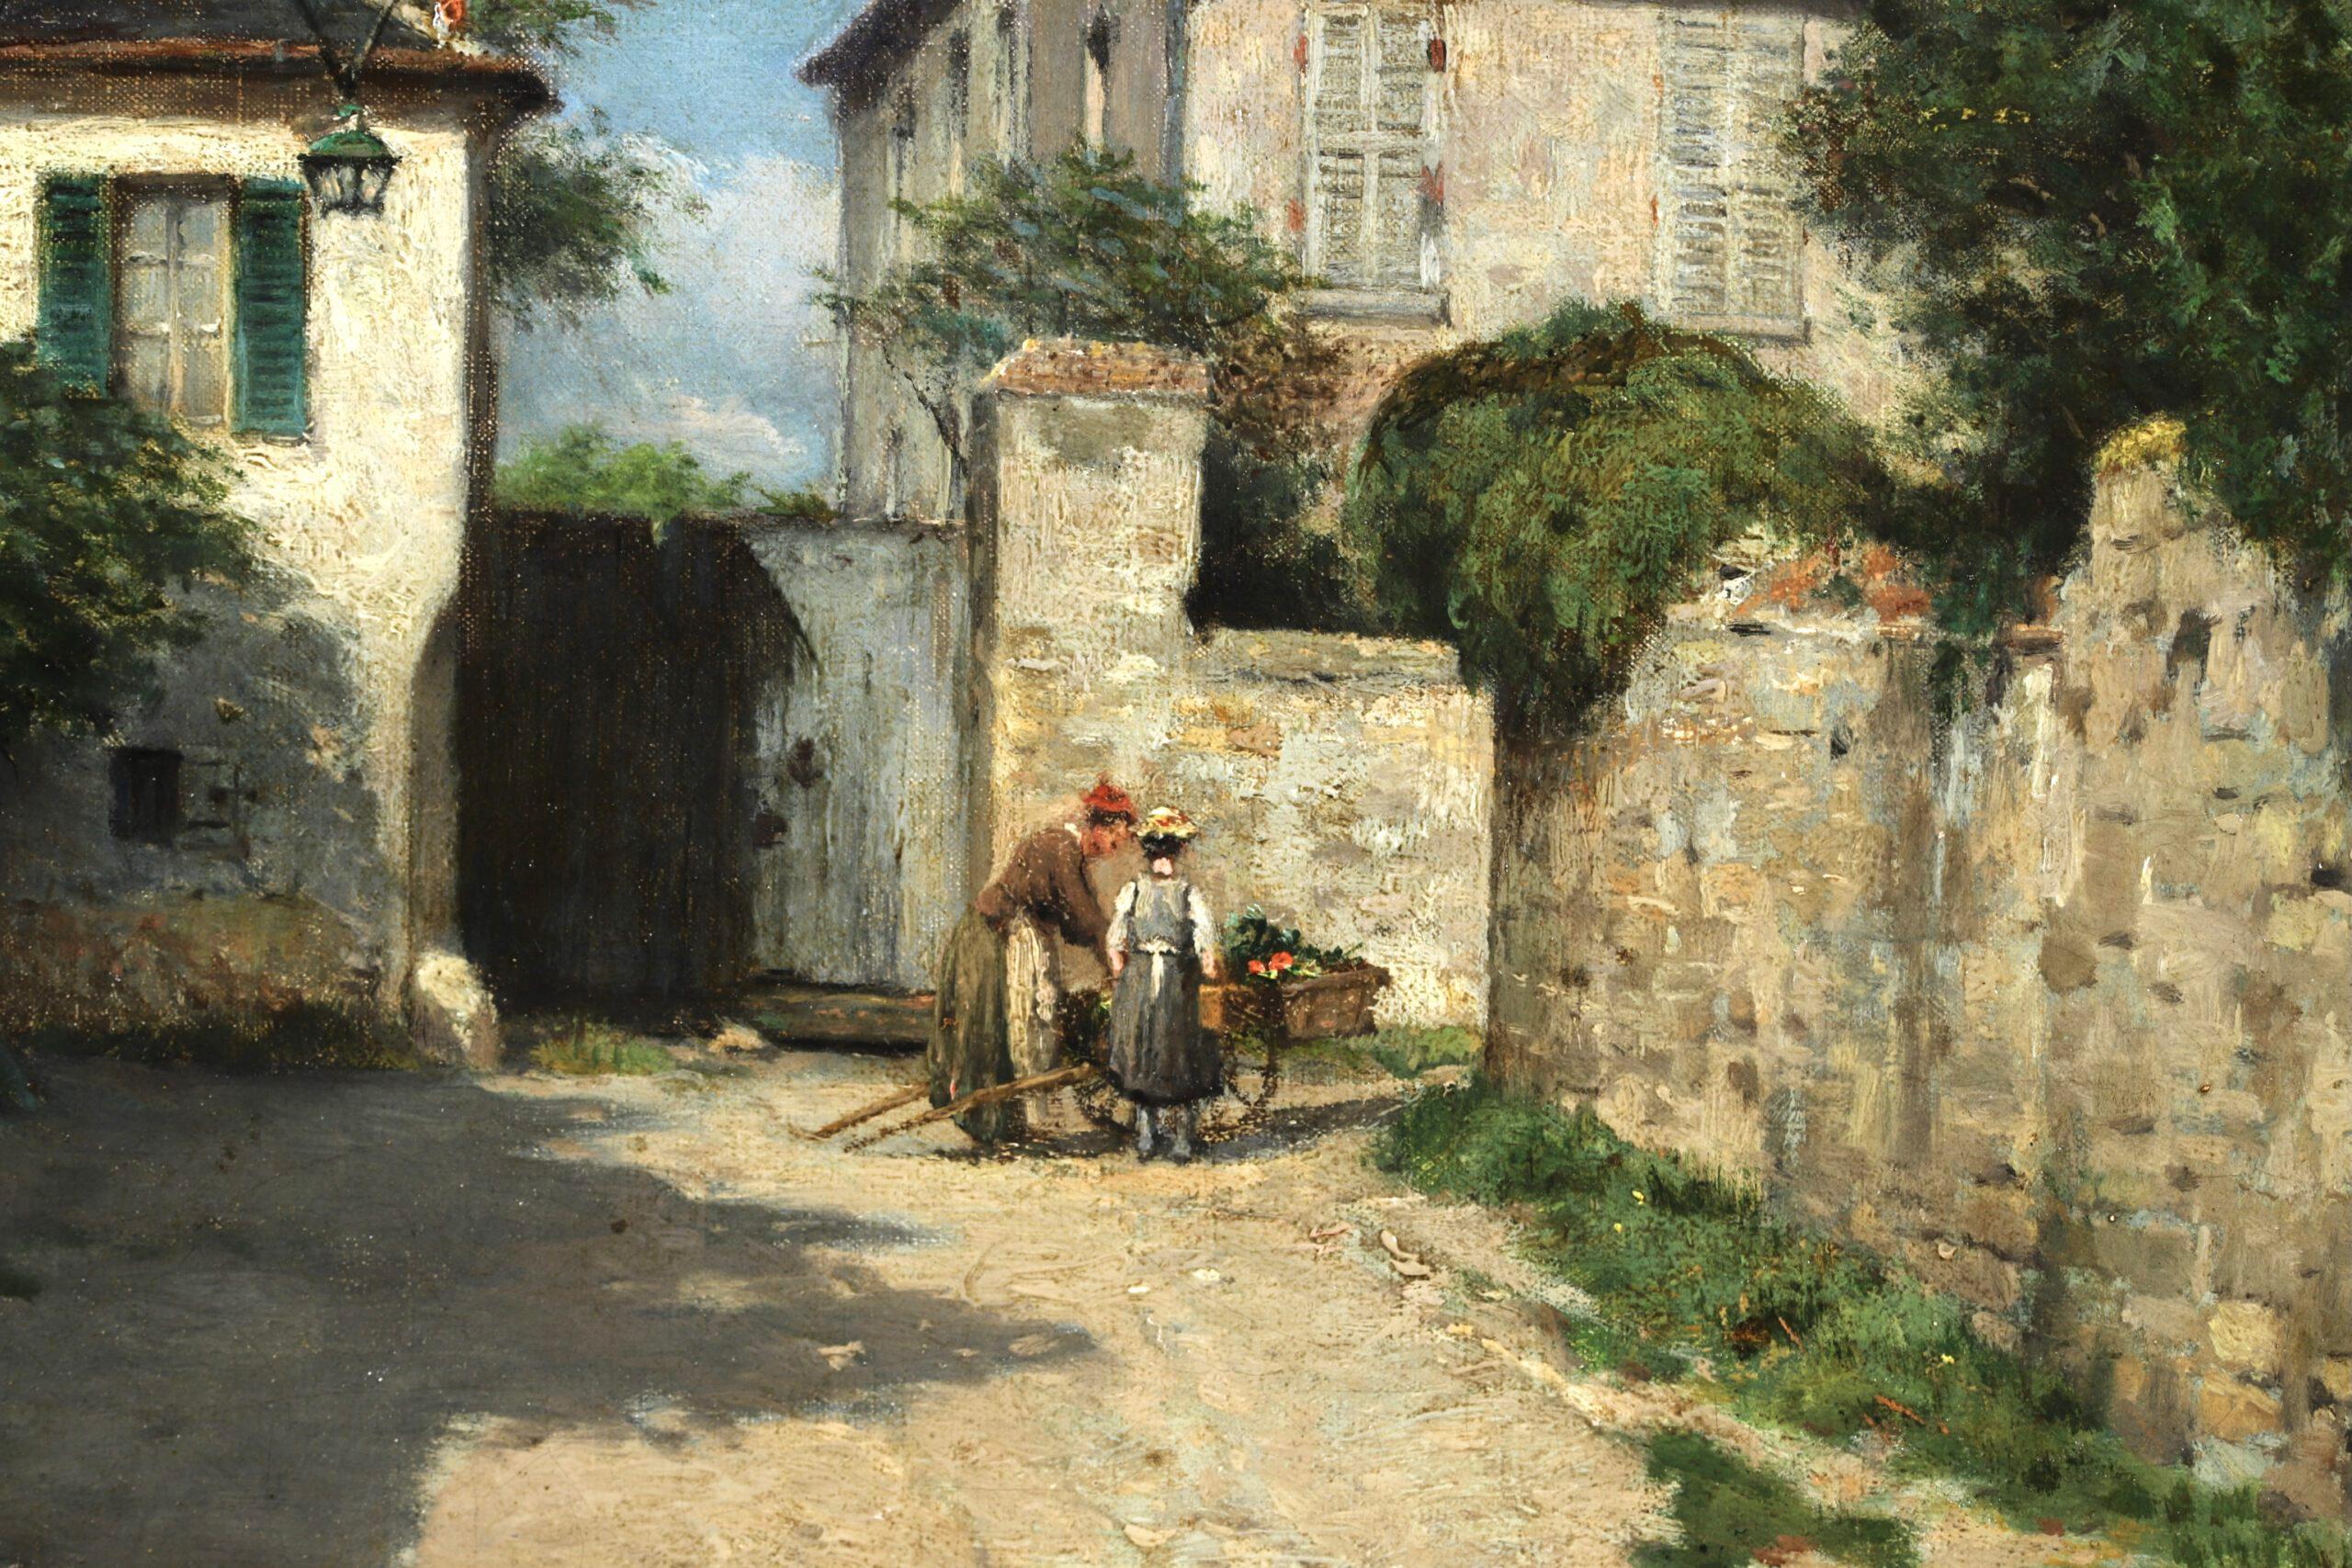 Le Village - Auvers-sur-Oise - Peinture de paysage impressionniste - Victor Vignon 1